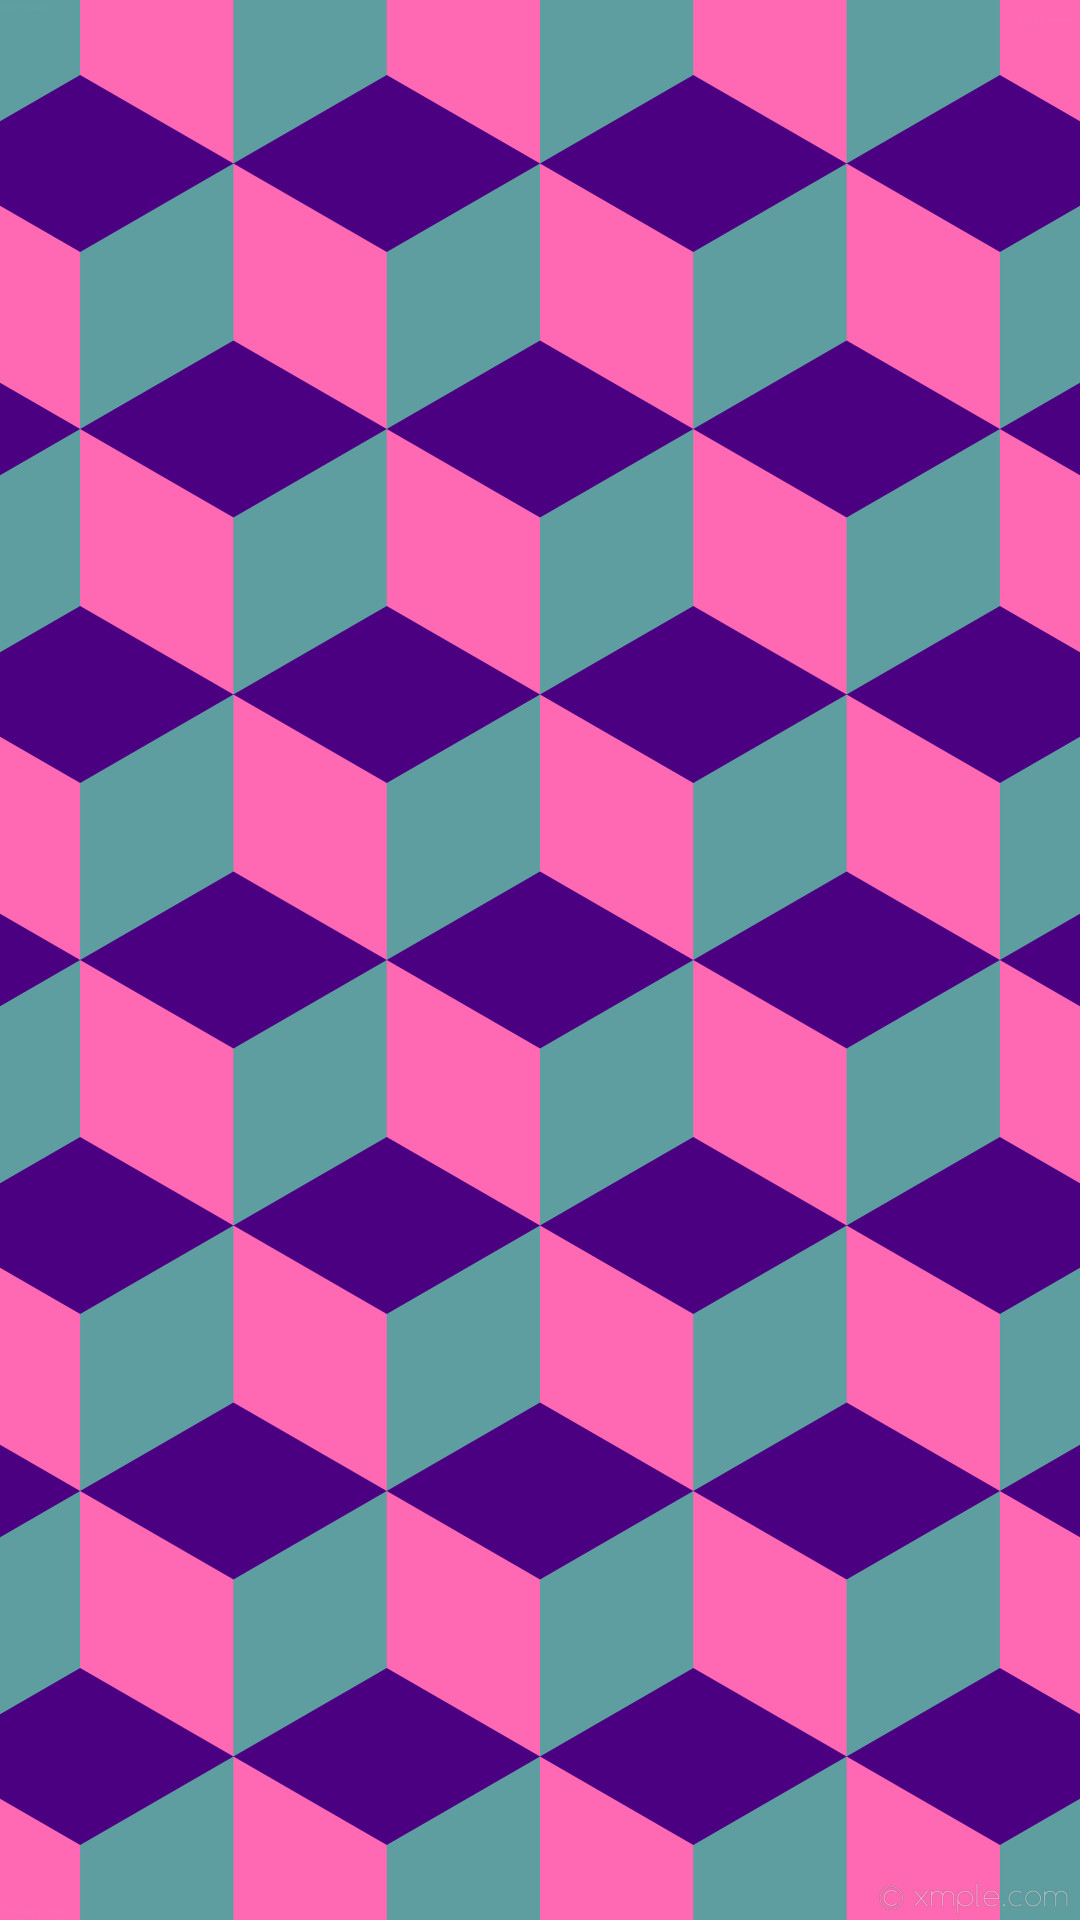 1080x1920 wallpaper purple pink 3d cubes blue indigo hot pink cadet blue #4b0082  #ff69b4 #